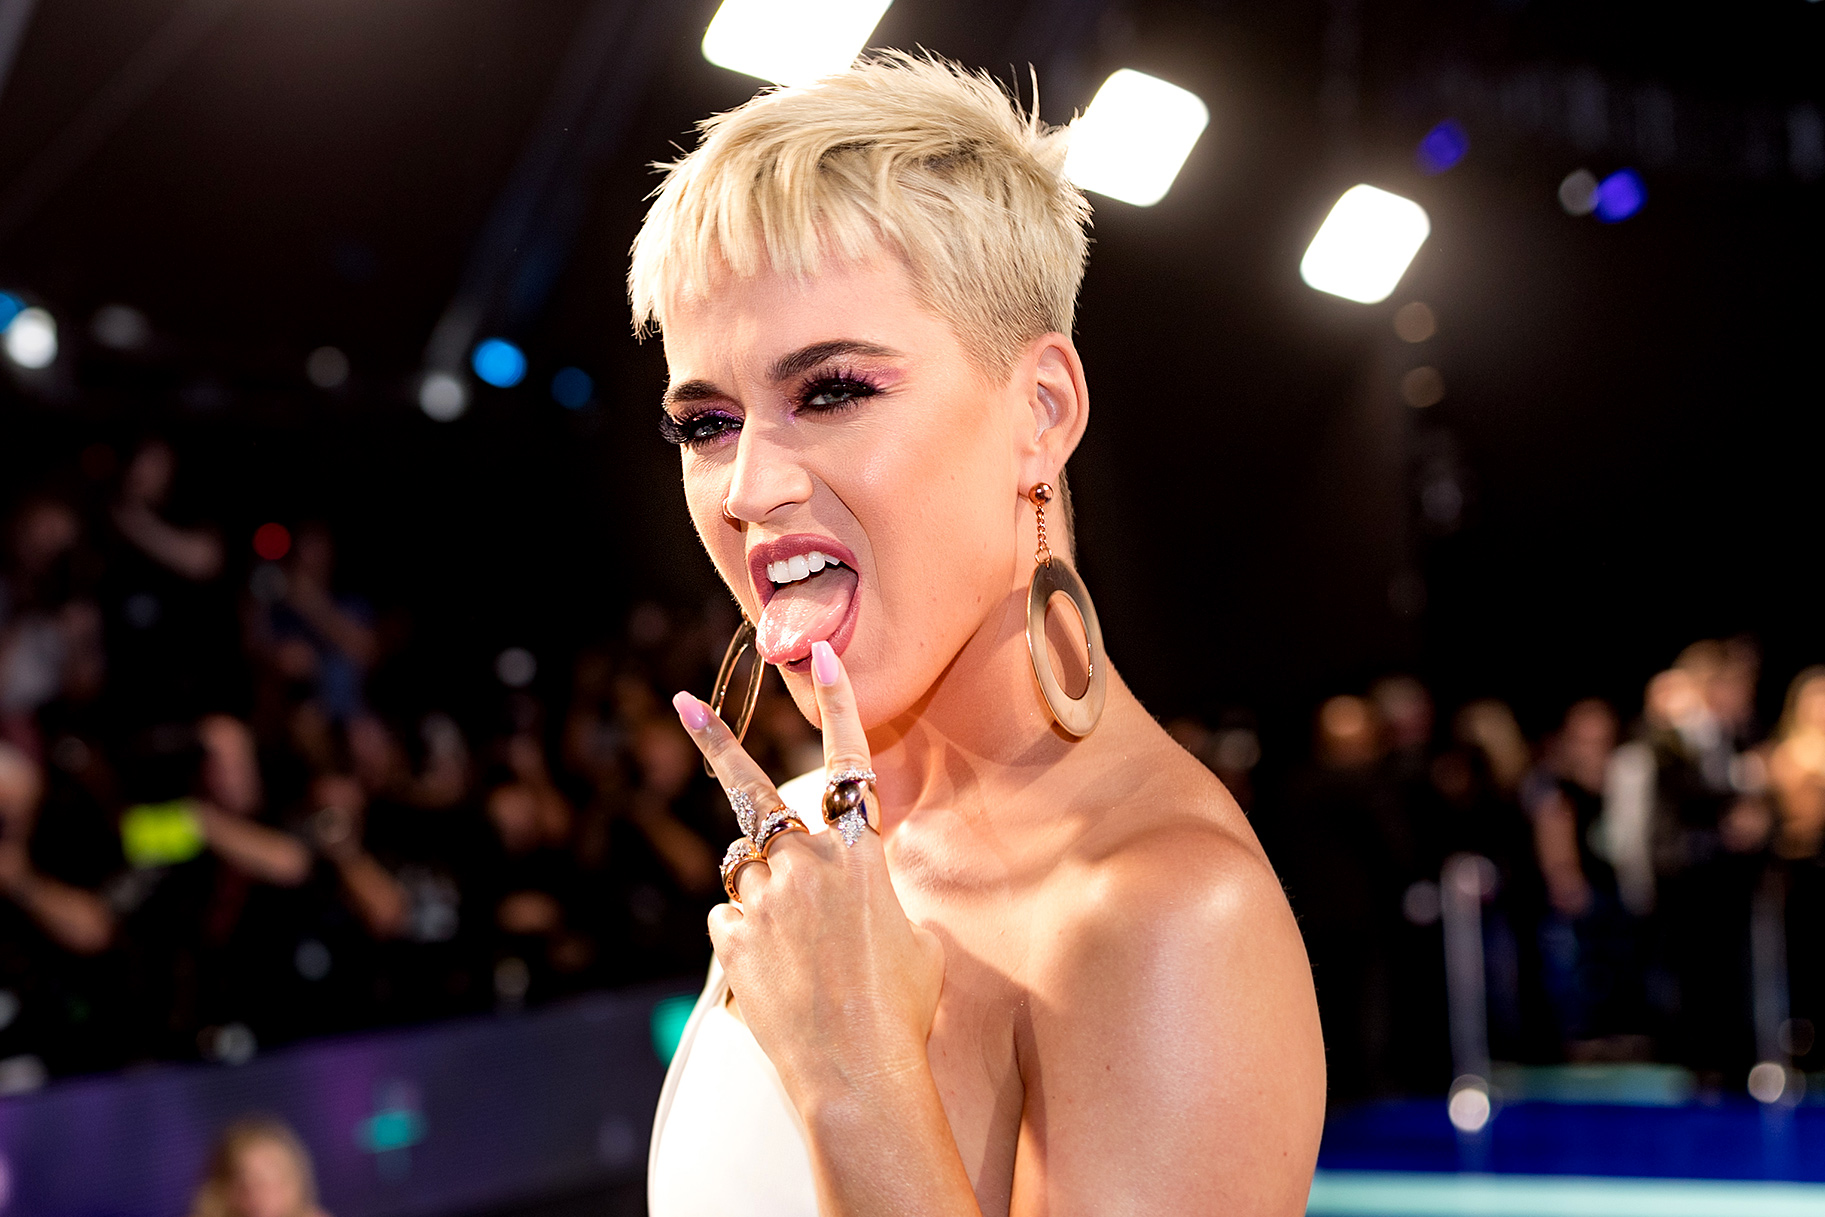 專輯表現一般 造型被質疑模仿 Katy Perry 首度回應坦然態度獲得一致讚賞